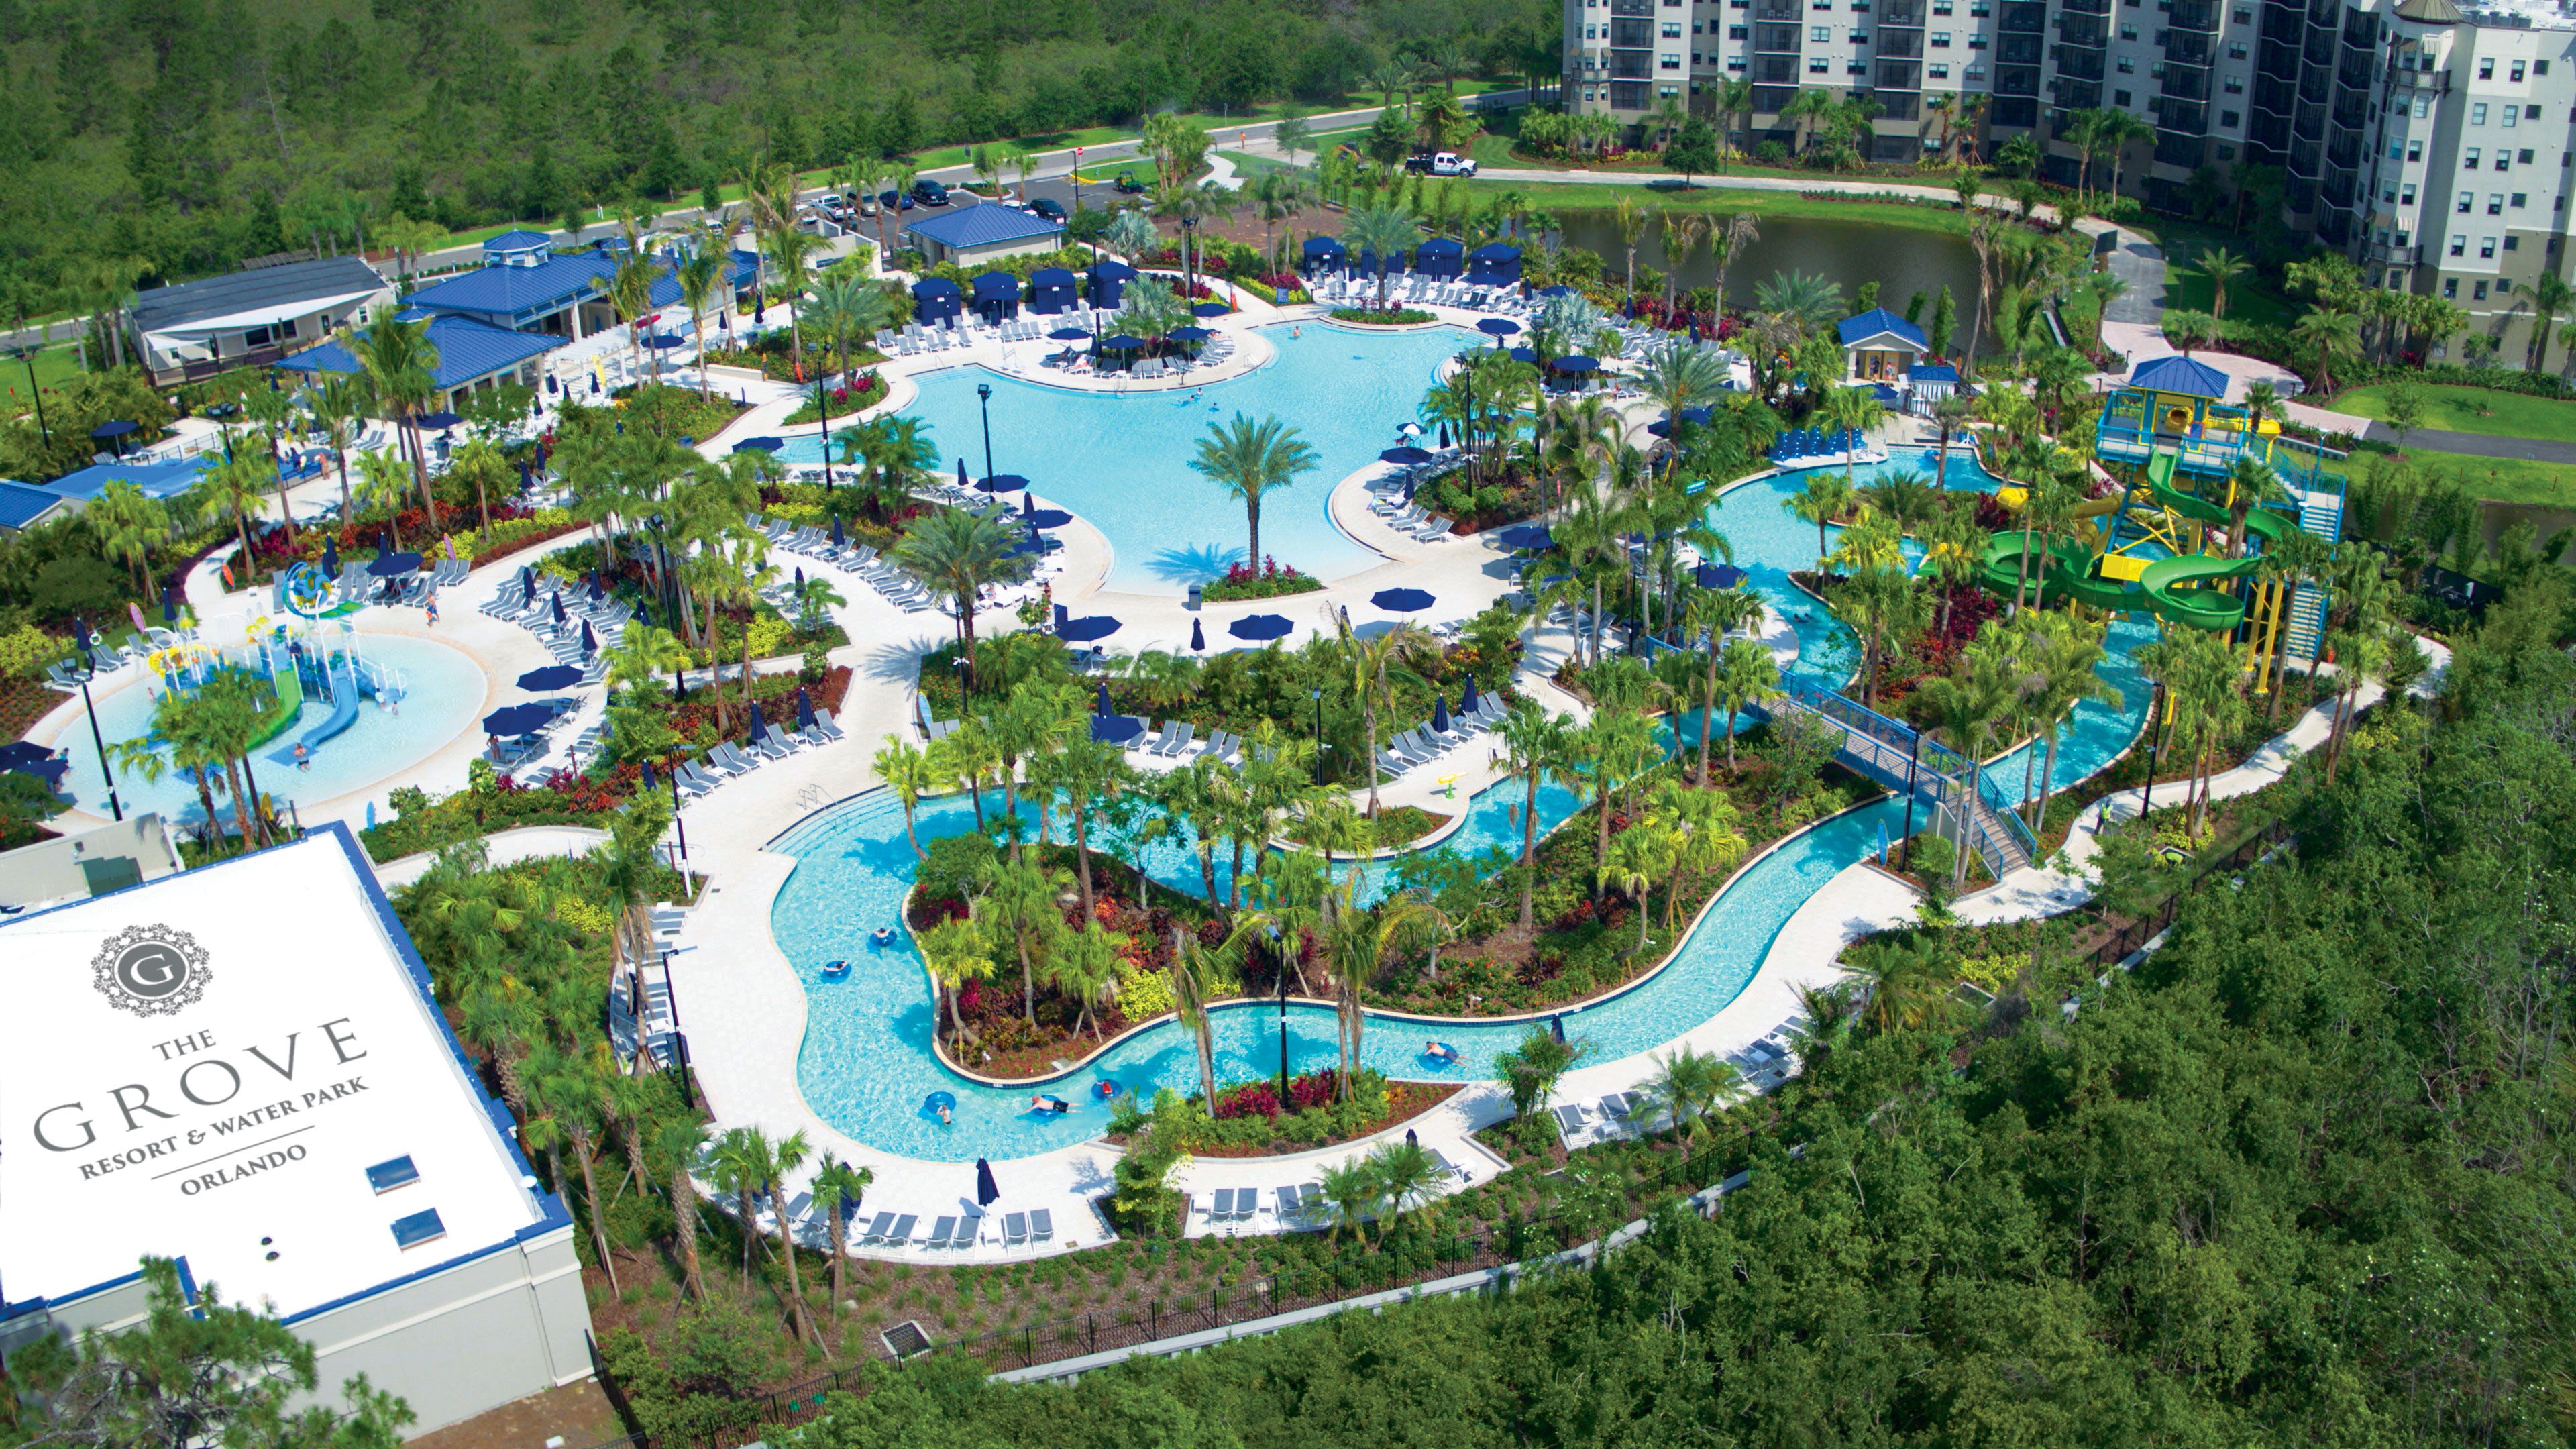 The Terraces at The Grove Resort, Orlando, FL Condo Hotel Units